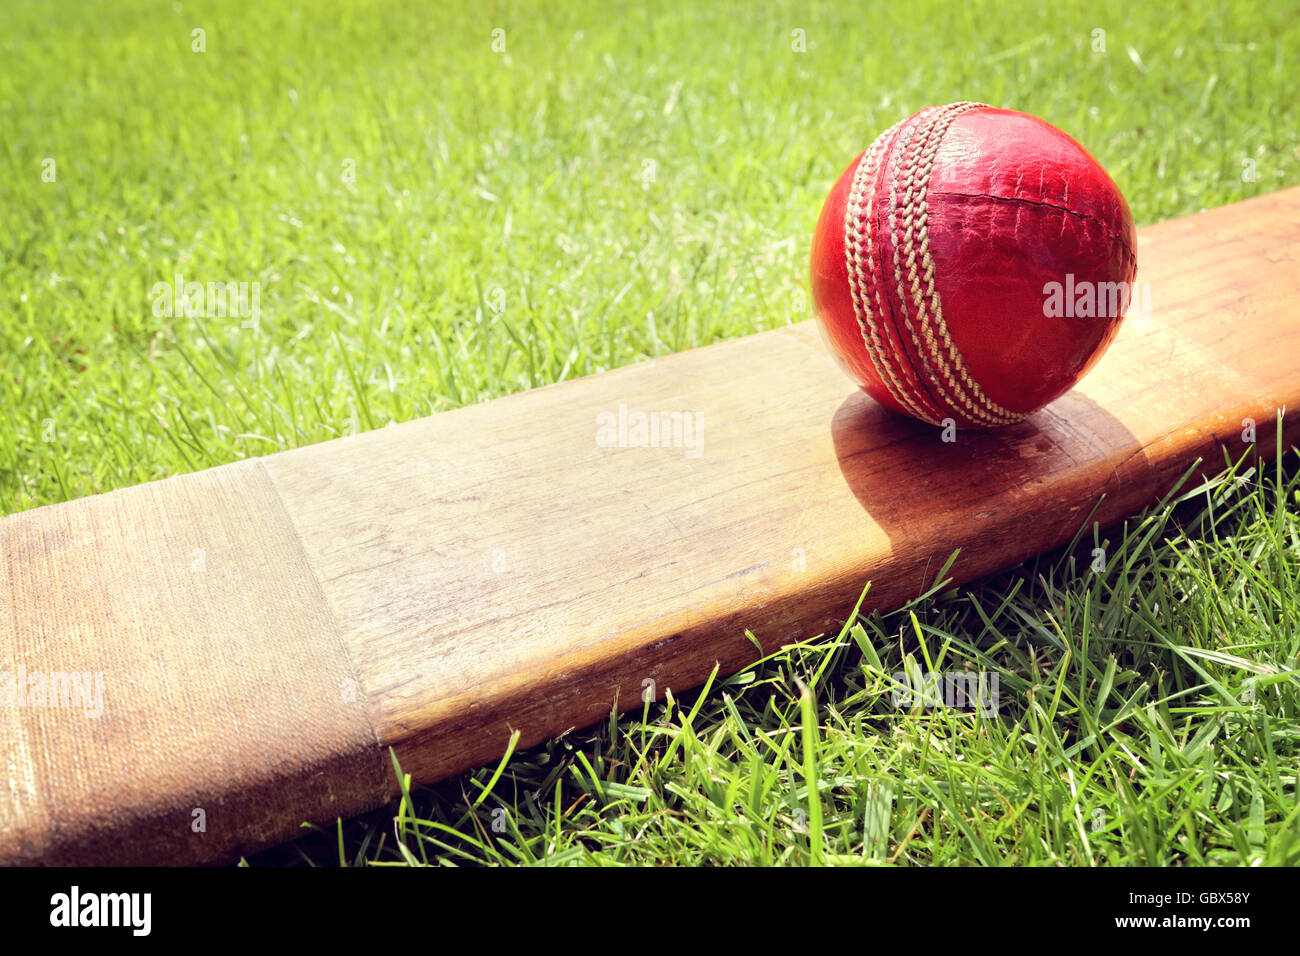 Bola de críquet descansa sobre un bate de críquet en la pasto verde de cricket pitch Foto de stock